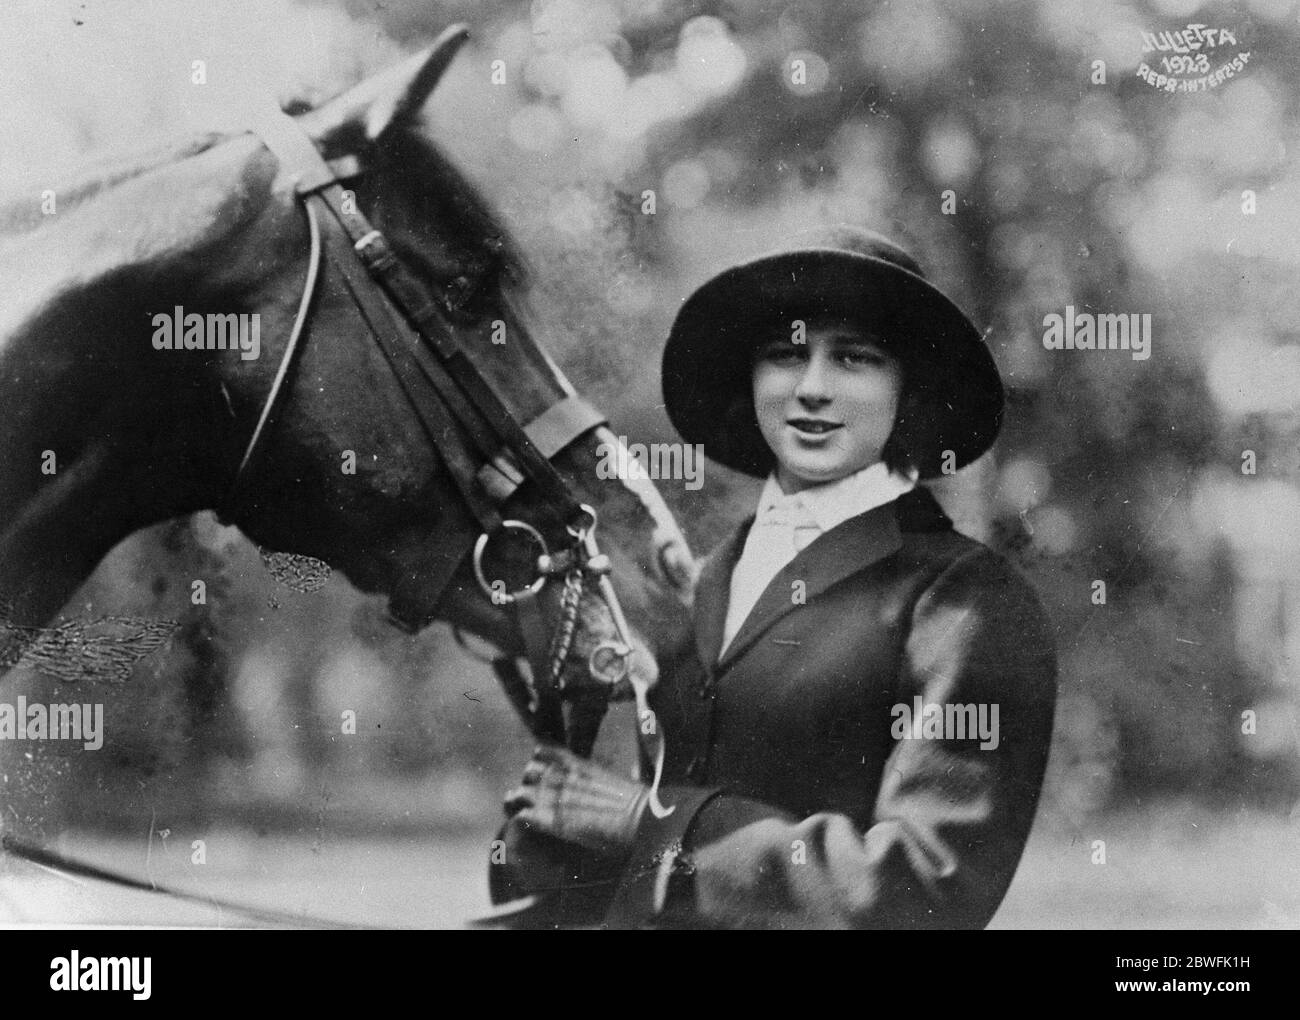 Royal Pantomine Artiste Principessa Iieana di Romania che è un intrepido cavallo e cavaliere intelligente . Ha appena pubblicato un romanzo intitolato ' My Life', scritto come se fosse un'autobiografia del cavallo mostrato nella foto 13 giugno 1923 Foto Stock